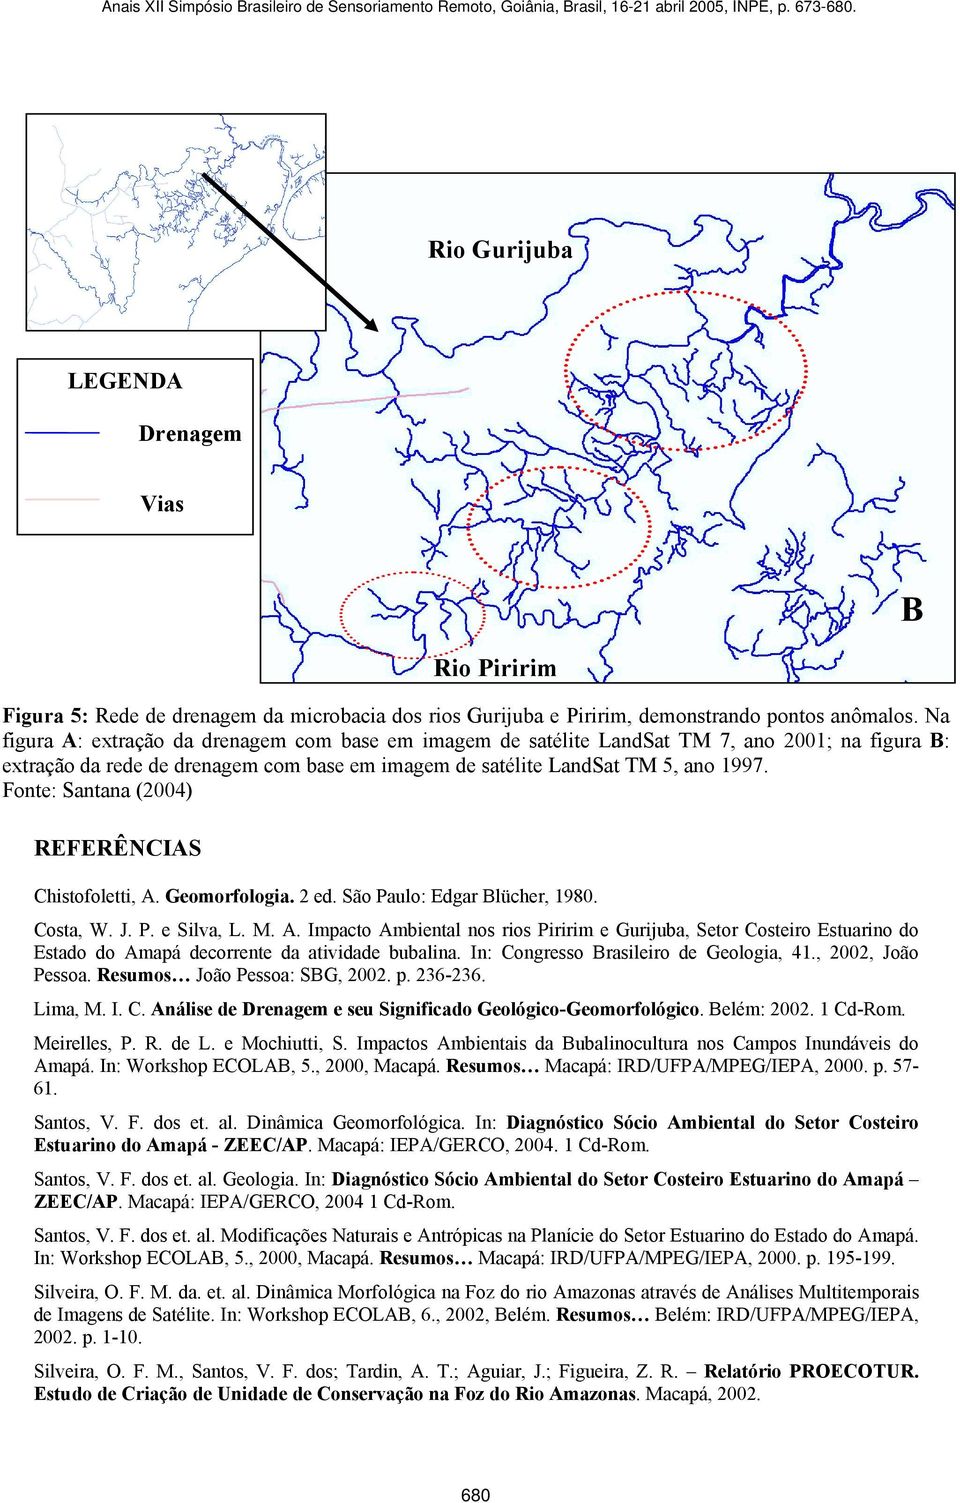 Fonte: Santana (2004) Chistofoletti, A. Geomorfologia. 2 ed. São Paulo: Edgar Blücher, 1980. Costa, W. J. P. e Silva, L. M. A. Impacto Ambiental nos rios Piririm e Gurijuba, Setor Costeiro Estuarino do Estado do Amapá decorrente da atividade bubalina.